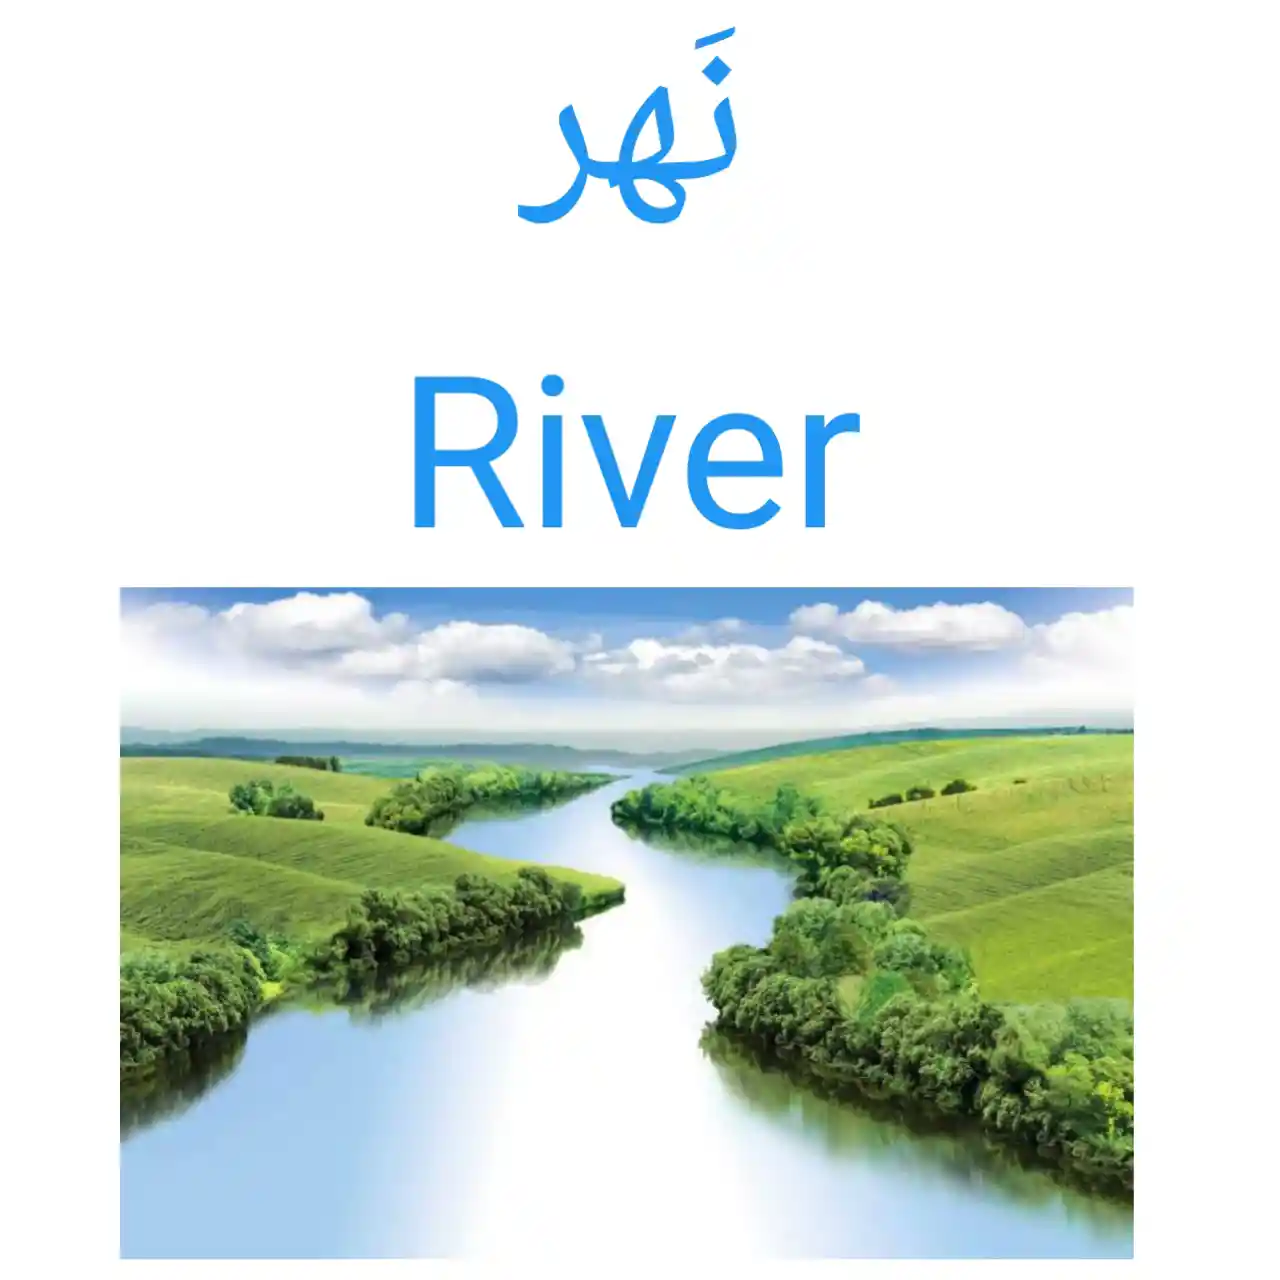 River In Arabic